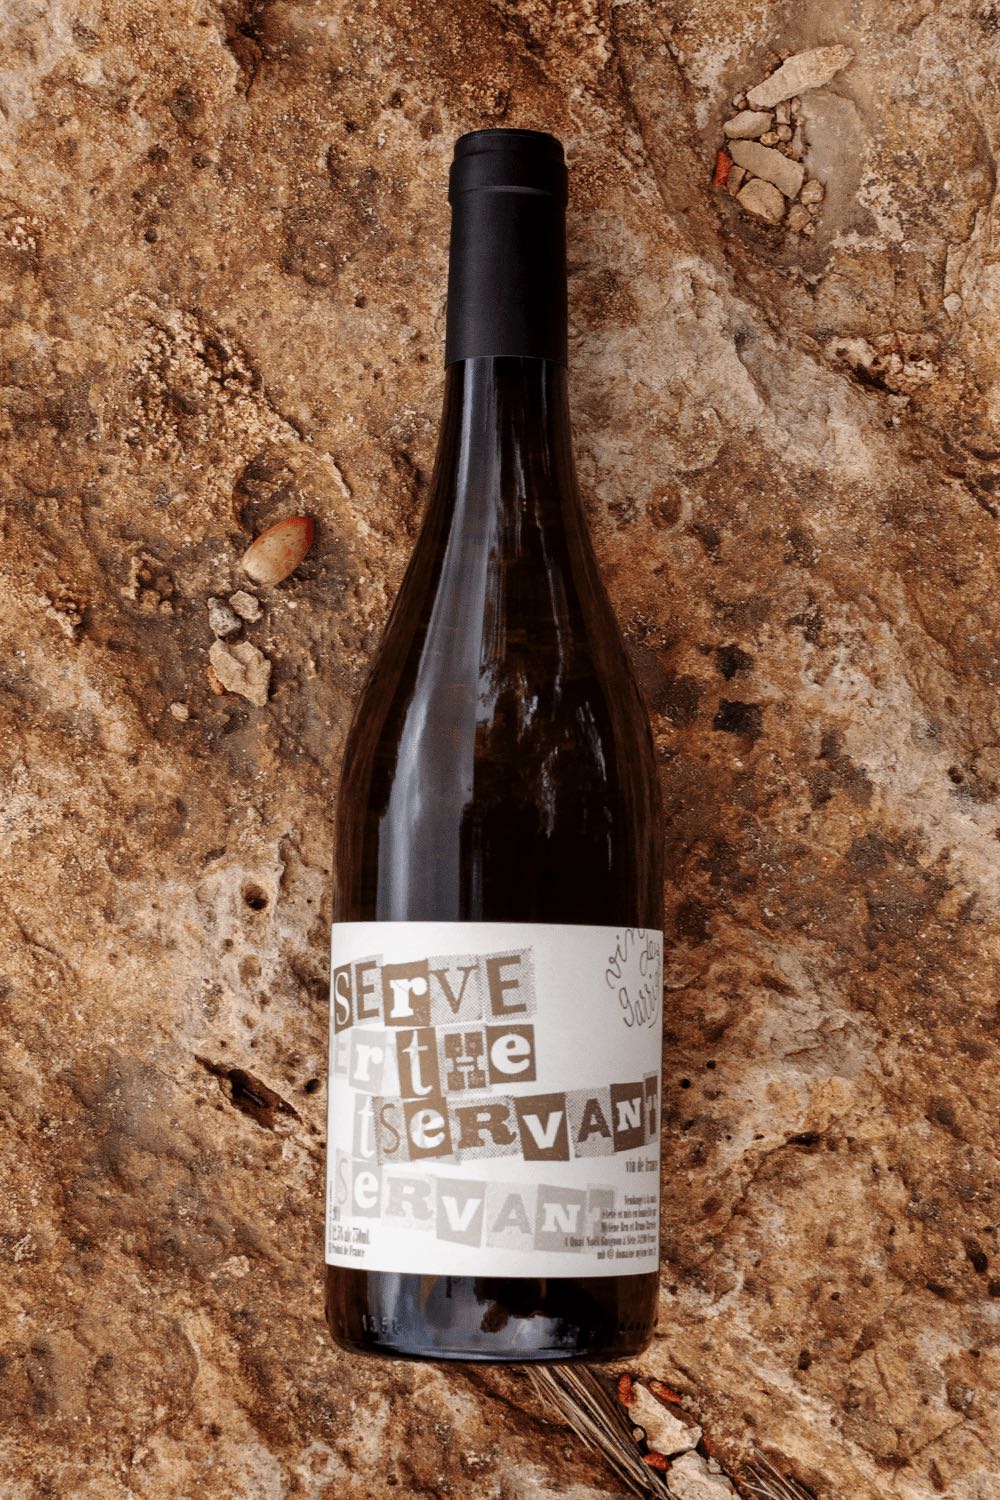 Serve the Servant - Domaine Mylène Bru - Vin nature - Vin de guarrigue